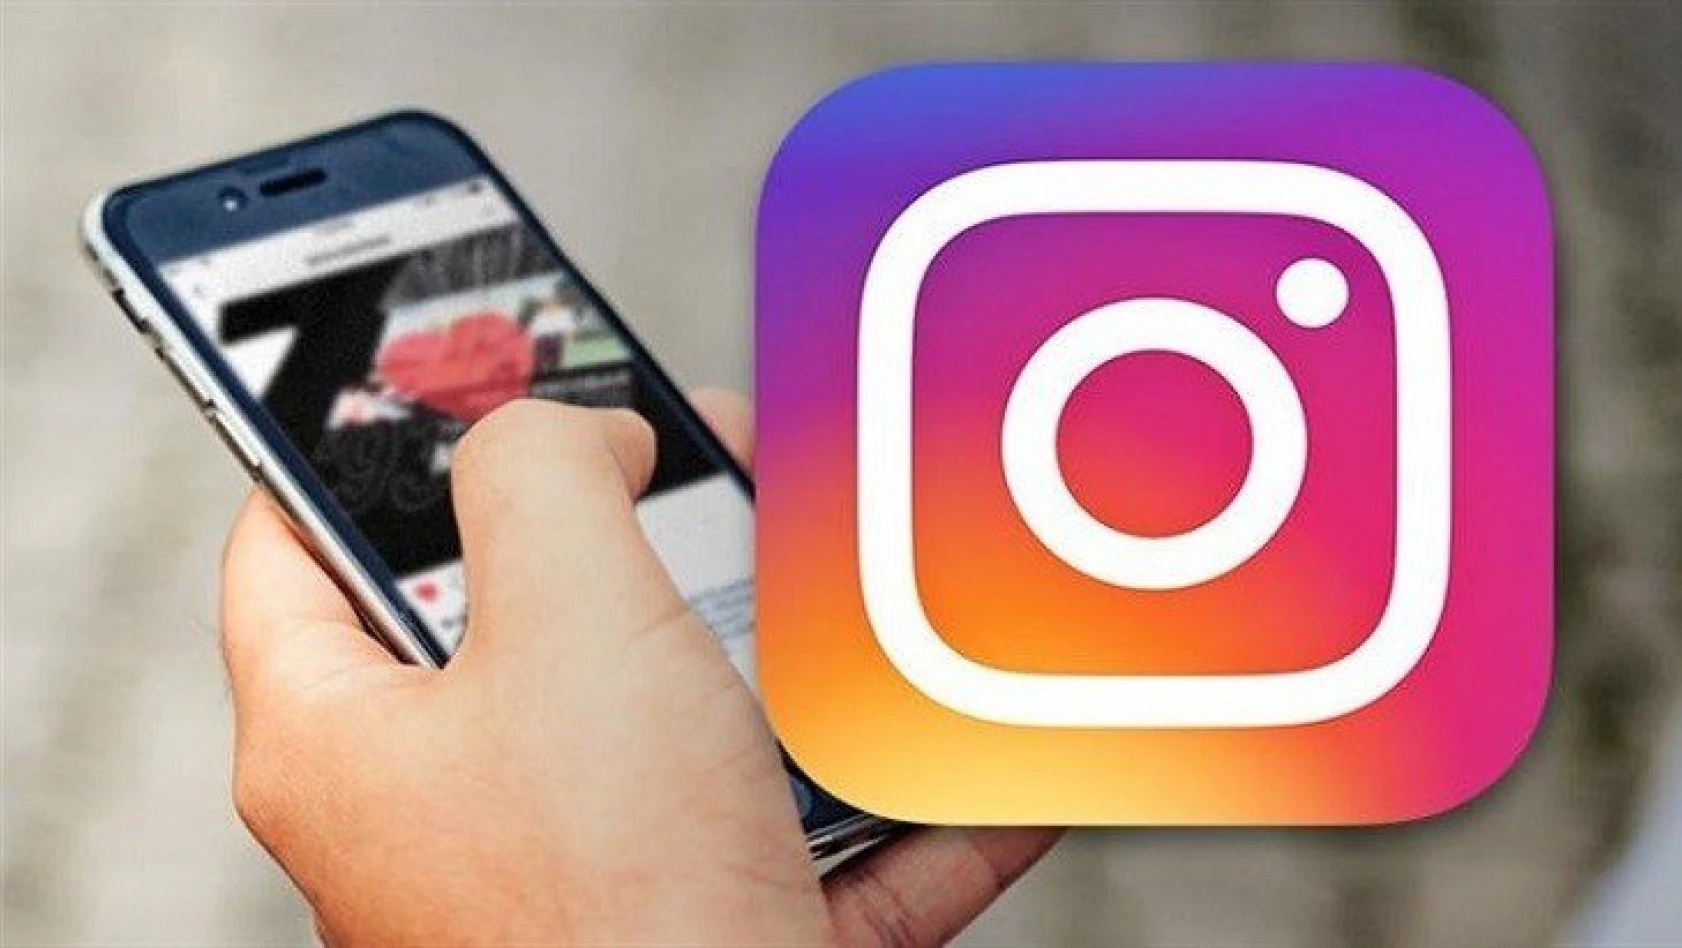 'Instagram hesabınıza gelen her mesaja tıklamayın' uyarısı